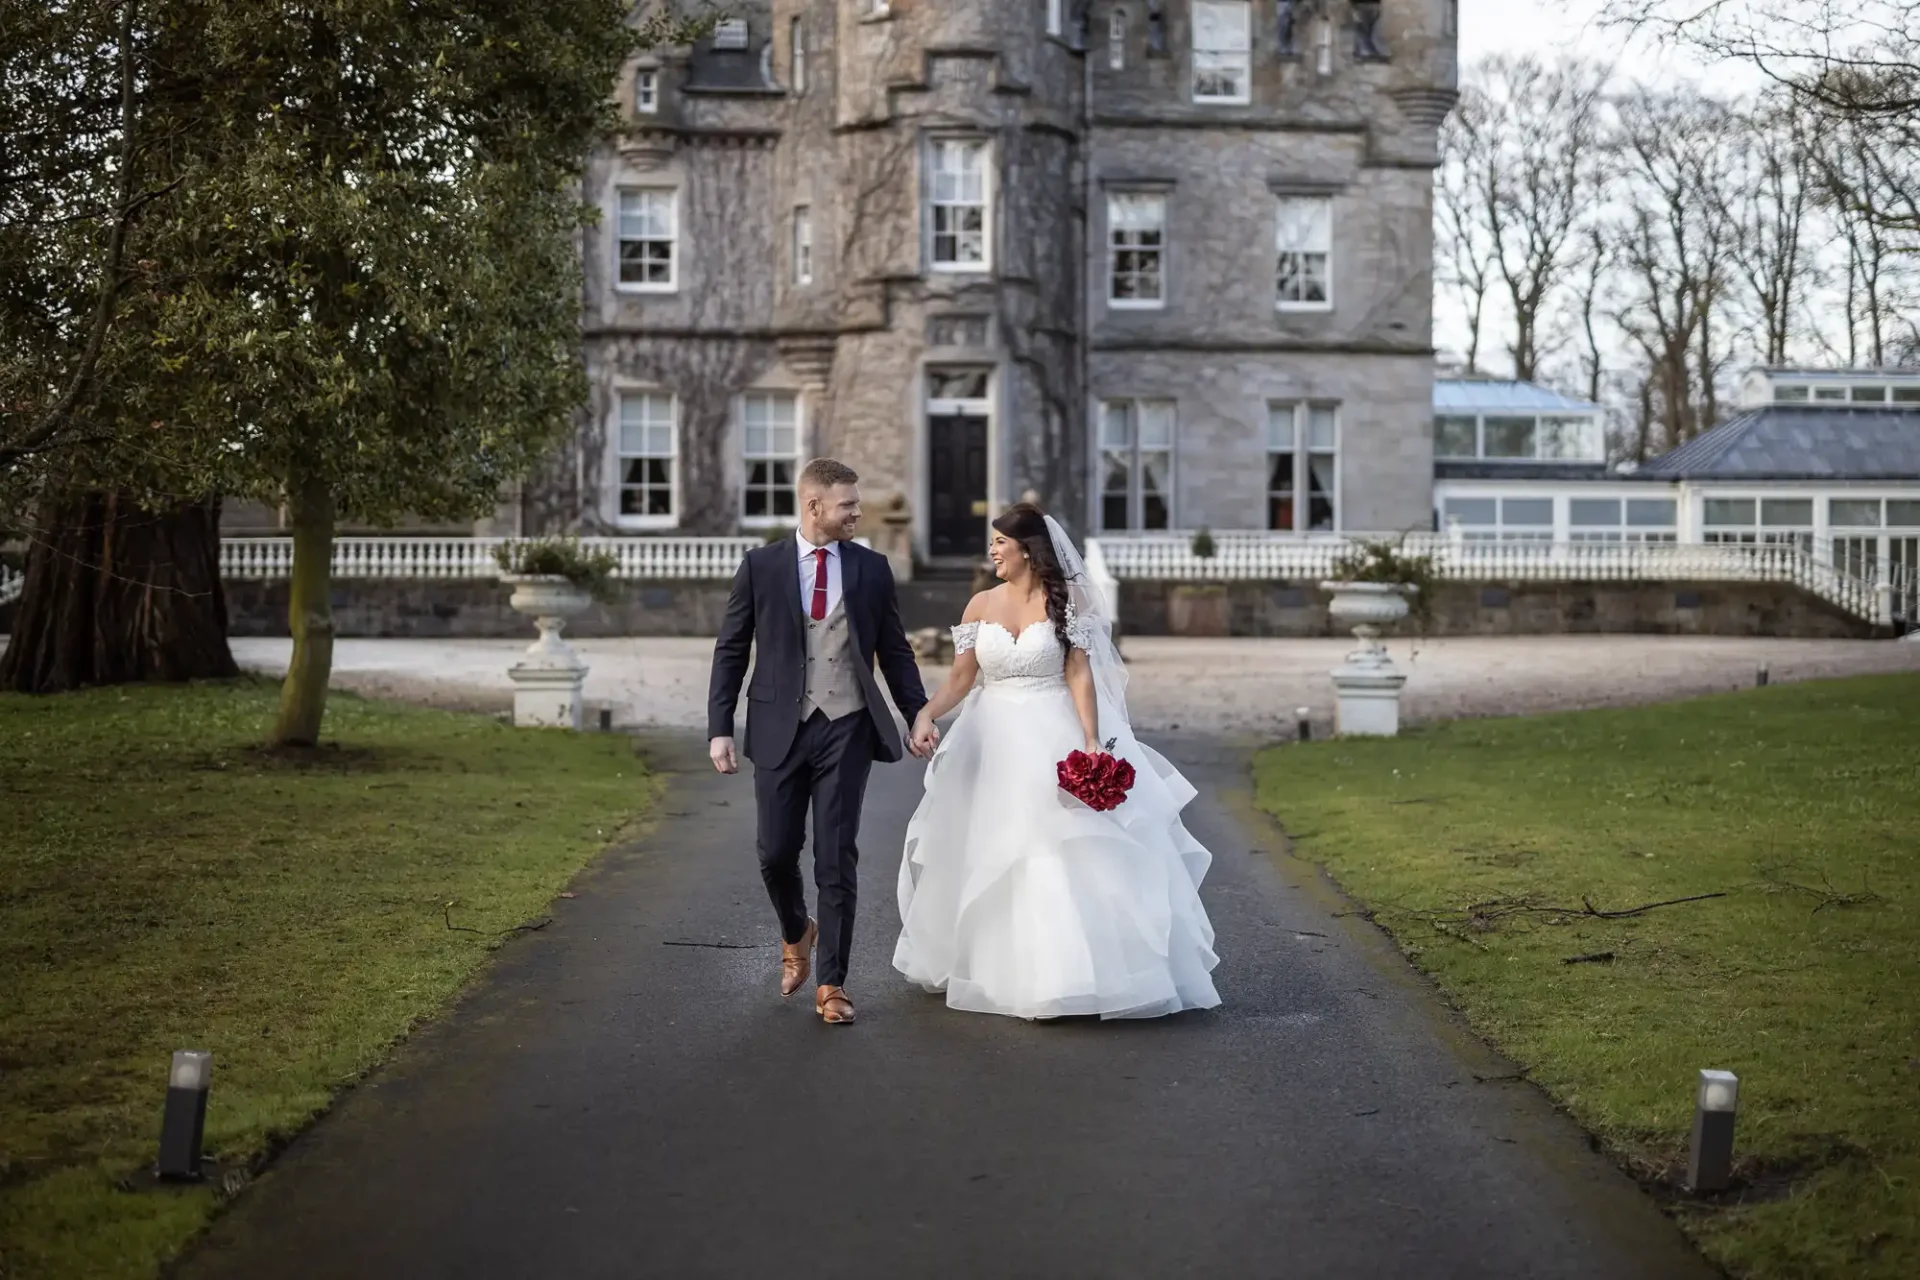 Carlowrie Castle wedding photos for Taylor and Brett's fairytale celebration